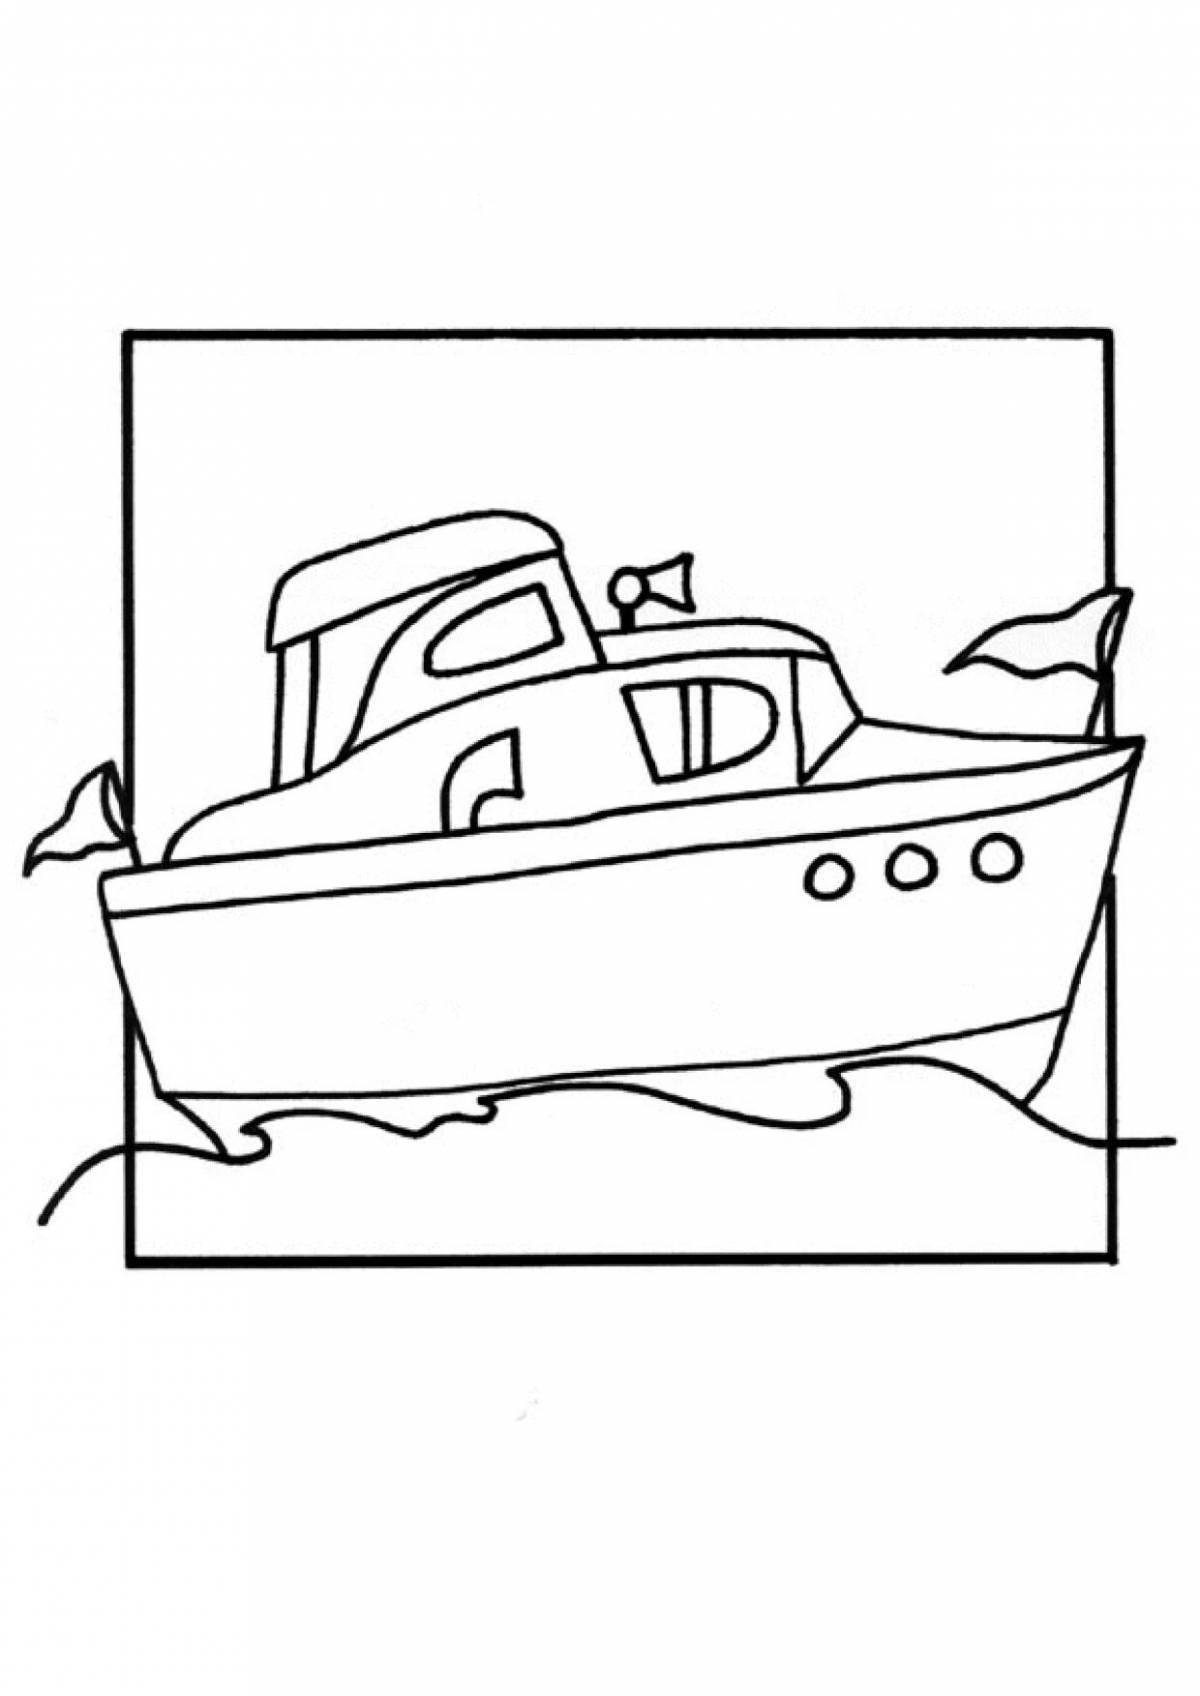 Boat for children #6